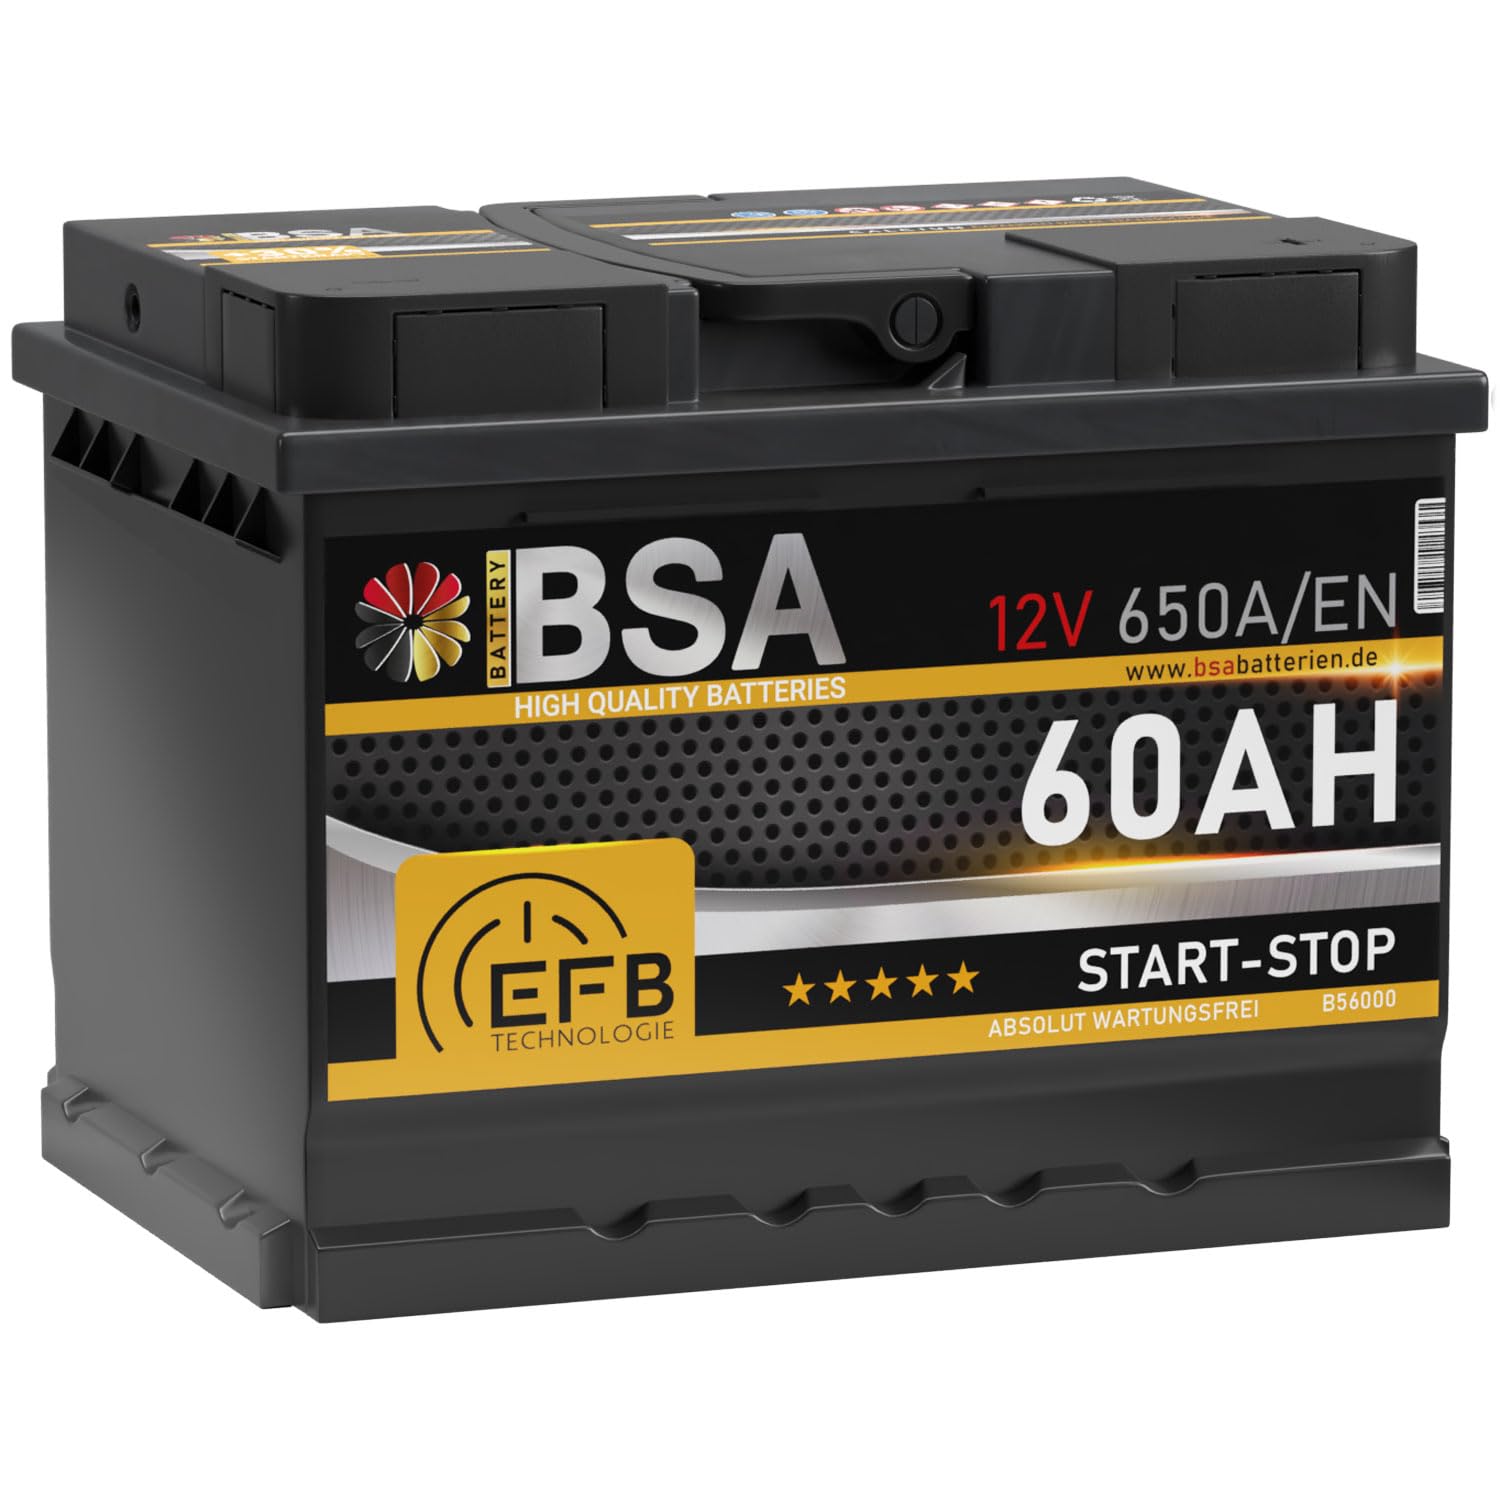 BSA EFB Batterie 60Ah 12V 650A/EN Start Stop Batterie Autobatterie Starterbatterie ersetzt 55Ah von BSA BATTERY HIGH QUALITY BATTERIES